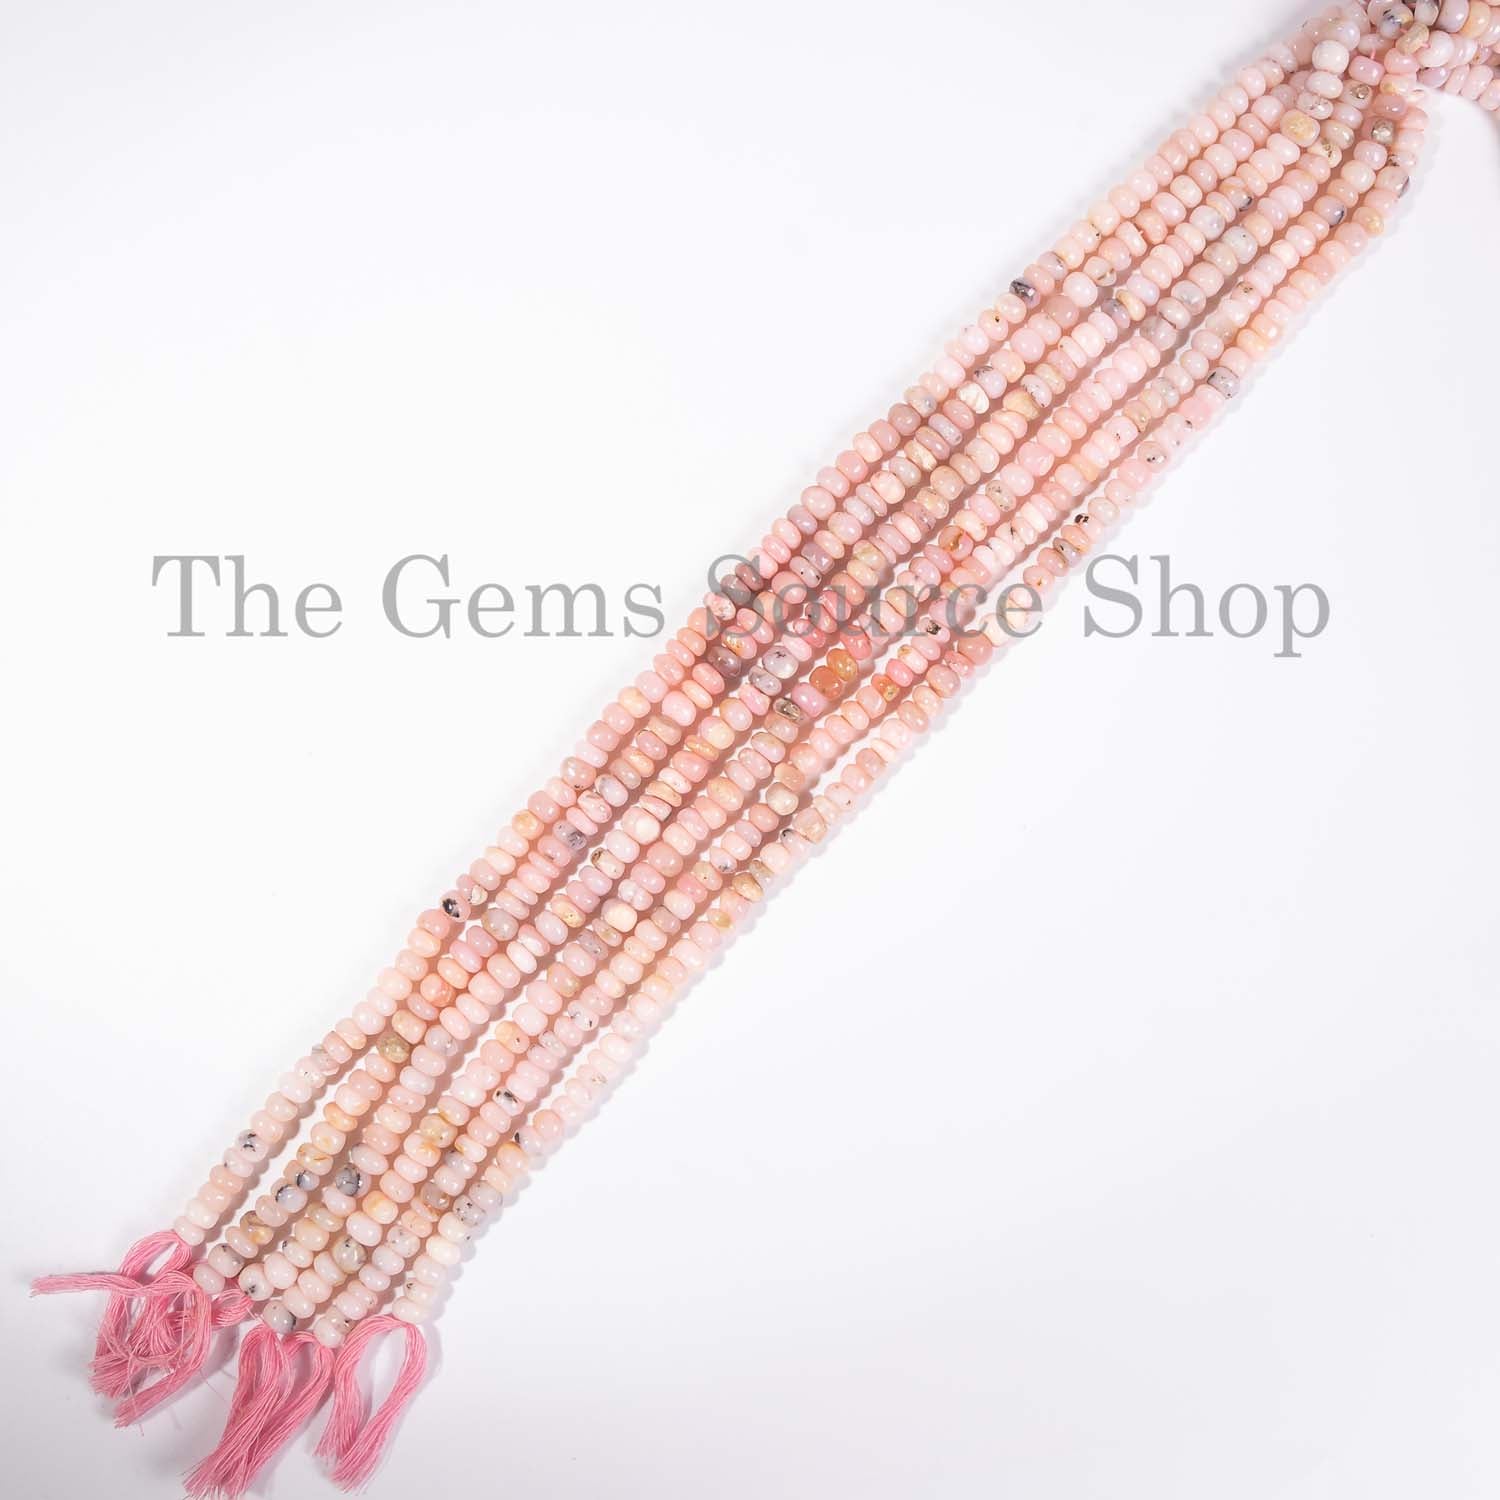 Pink Opal Beads, Pink Opal Smooth Beads, Pink Opal Rondelle Beads, Pink Opal Gemstone Beads